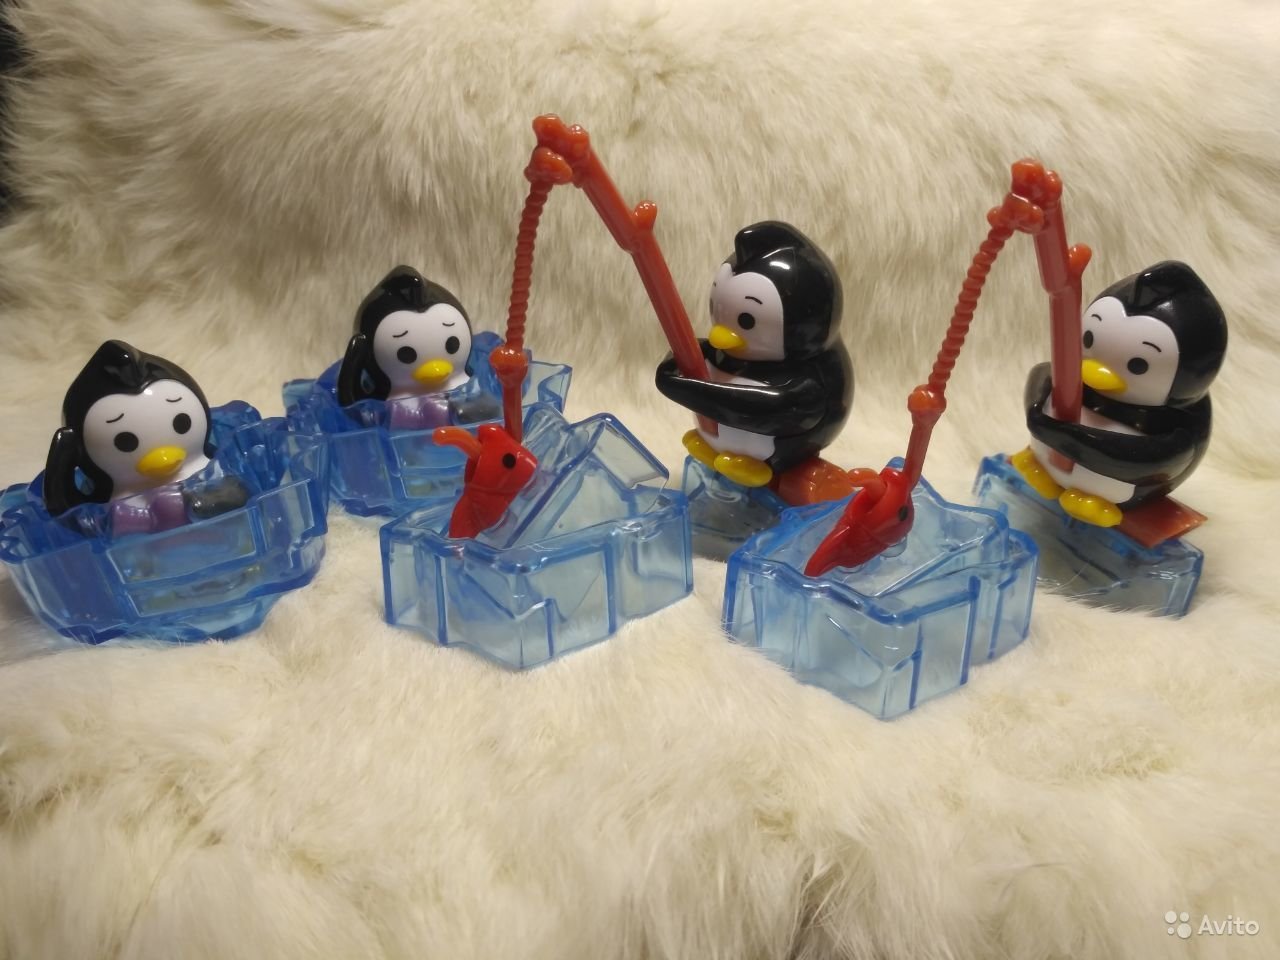 Киндер игрушки пингвины. Киндер макси пингвины. Киндер макси пингвины игрушки. Коллекция пингвинов из Киндер макси. Киндер Пингвин на бревне.